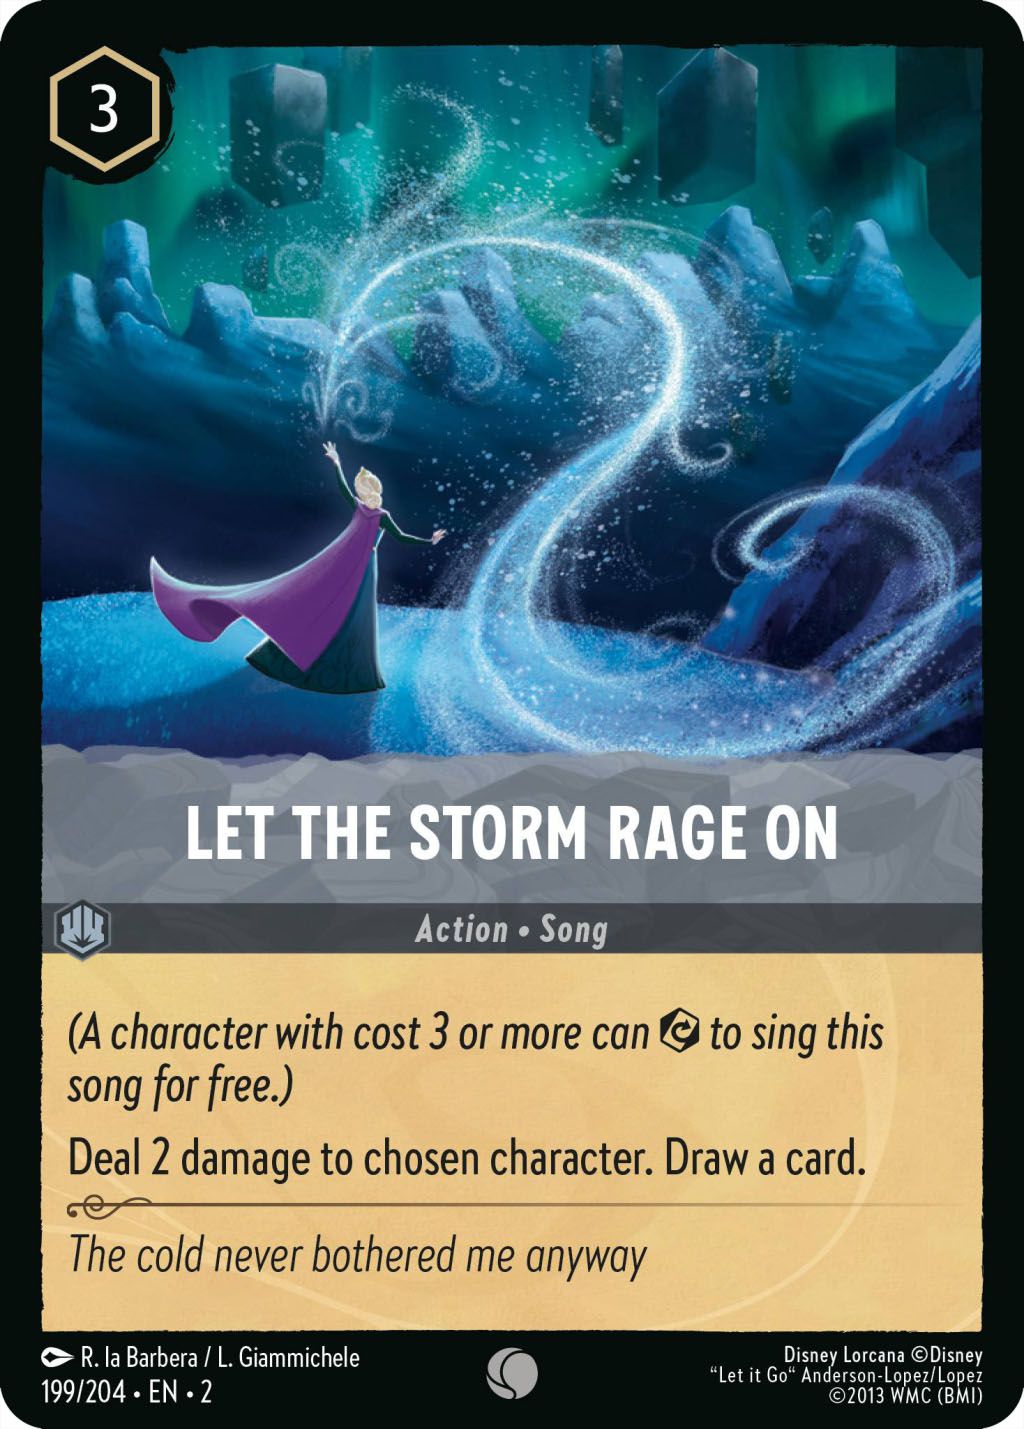 Let The Storm Rage On est une chanson à 3 encres qui inflige 2 dégâts à un personnage choisi.